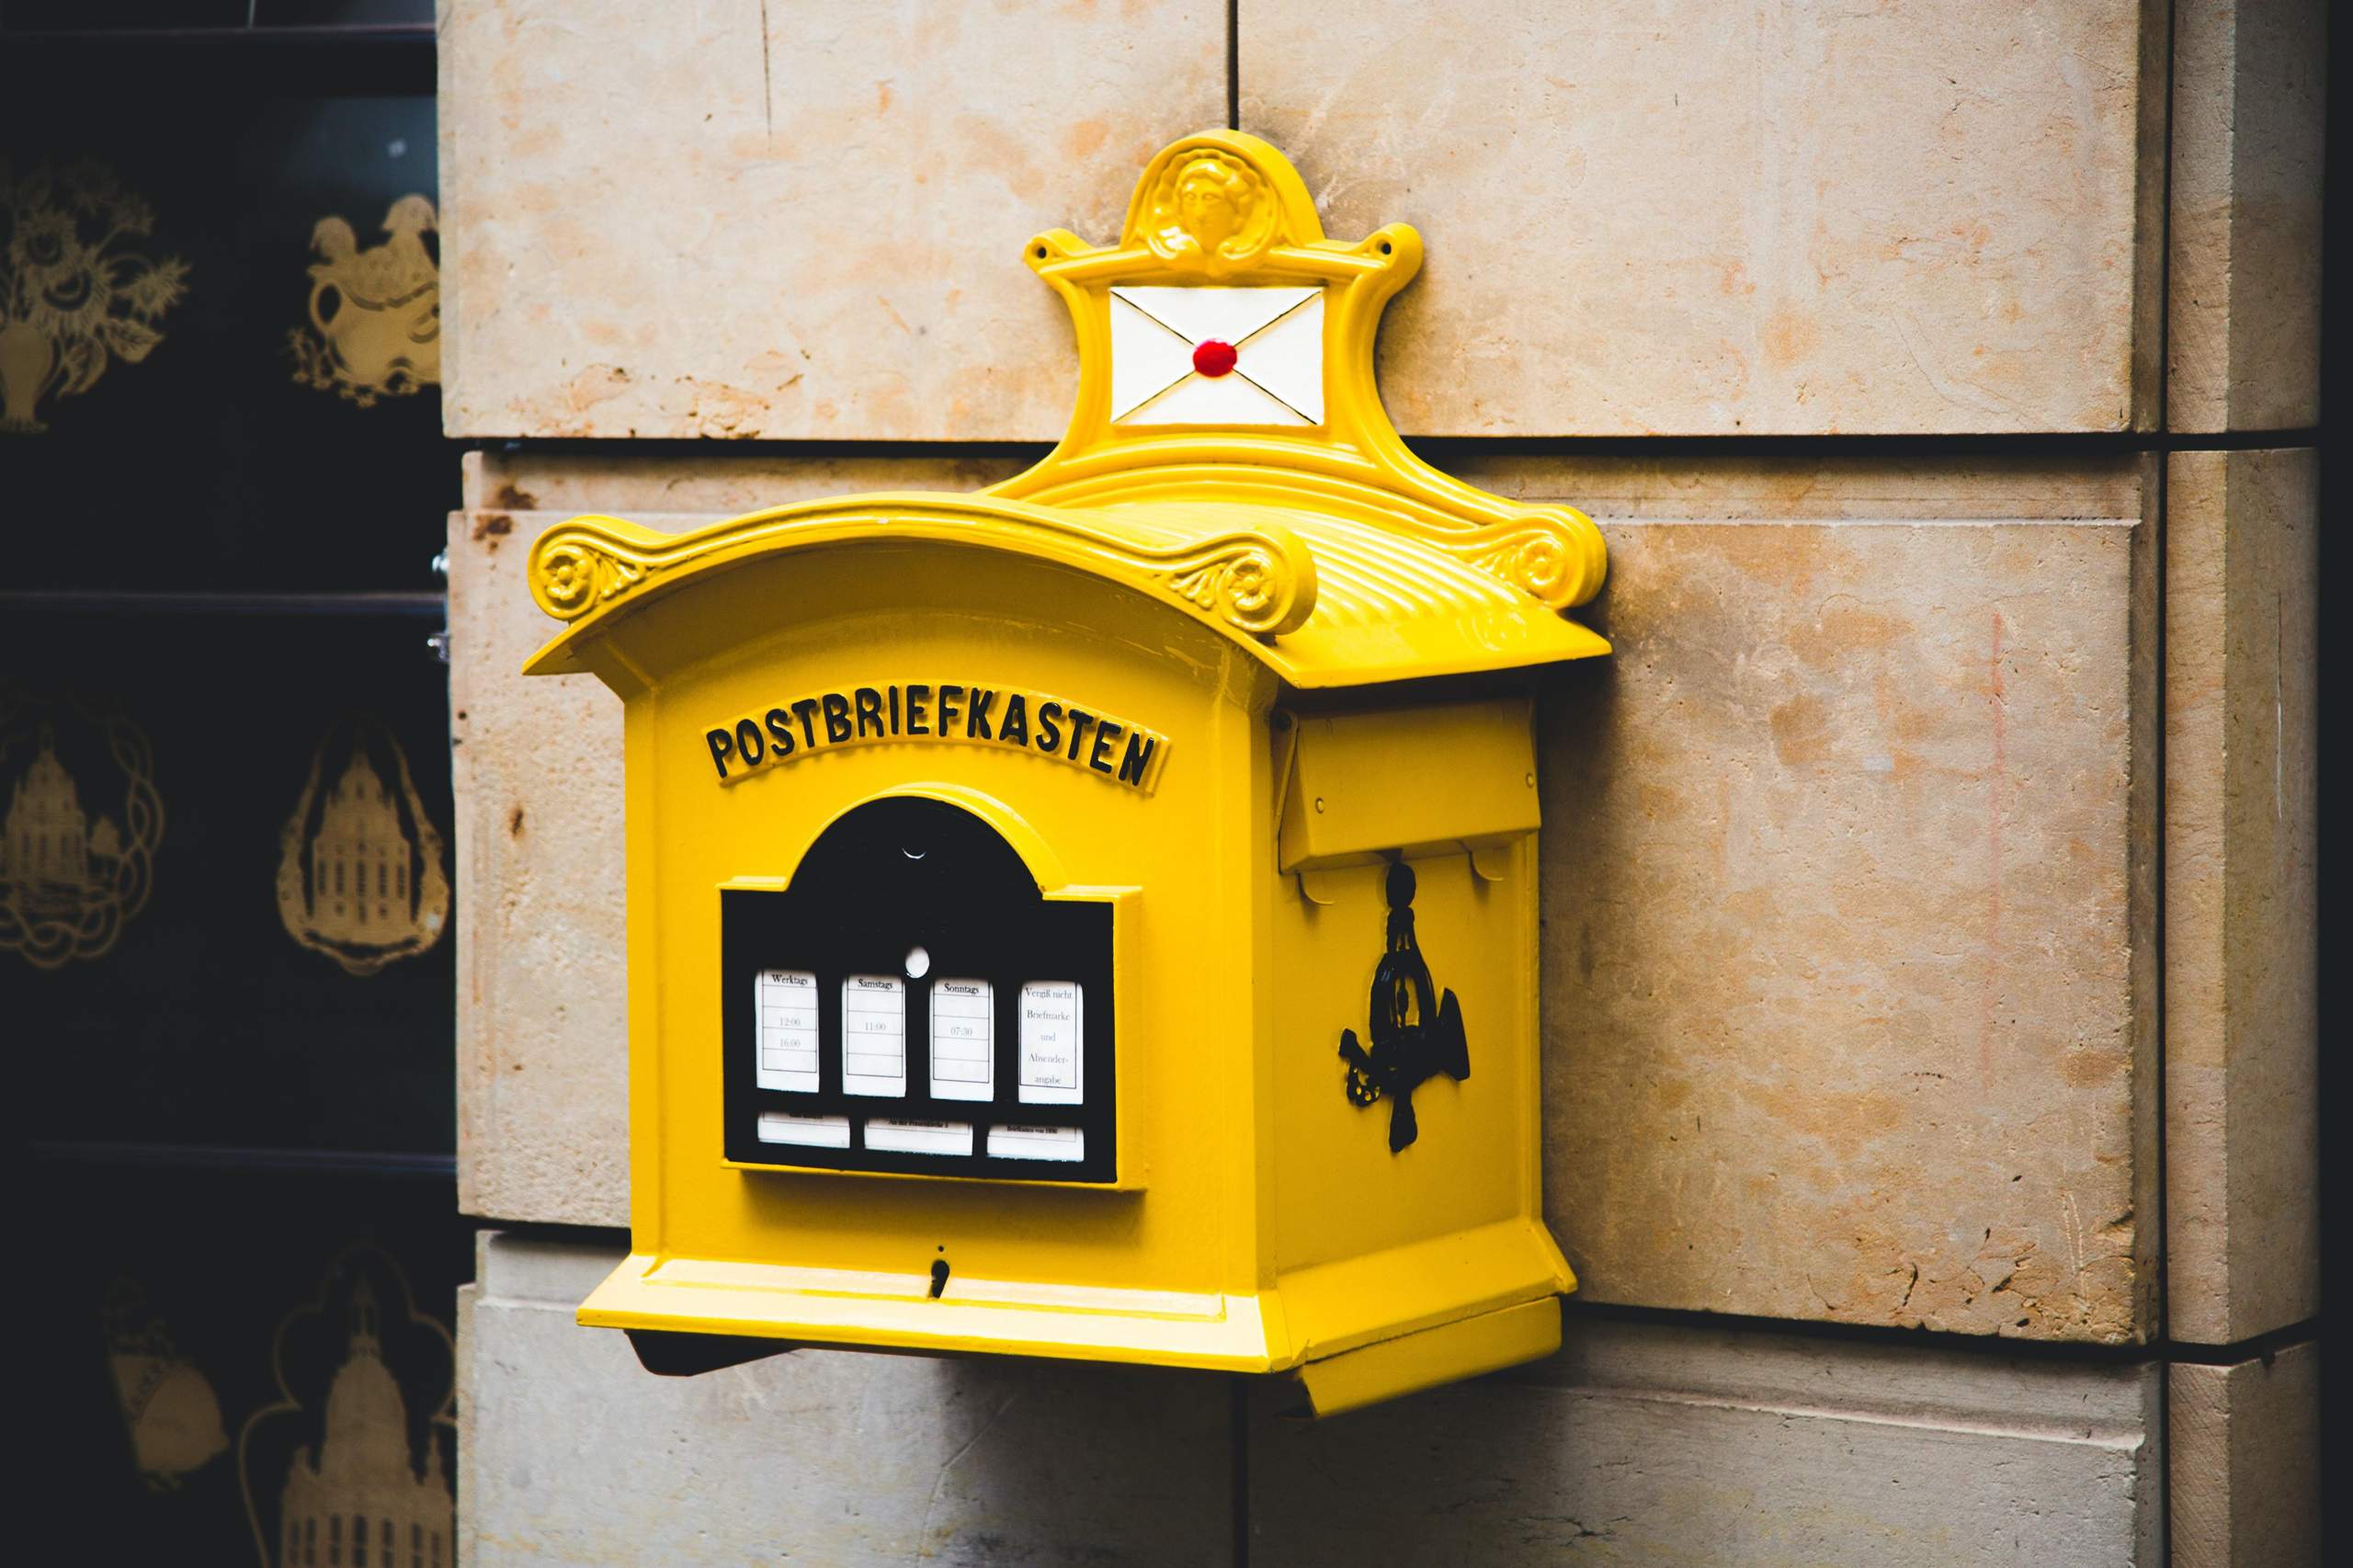 Post Briefzusteller Arbeit und Arbeitszeiten? - Gutefrage